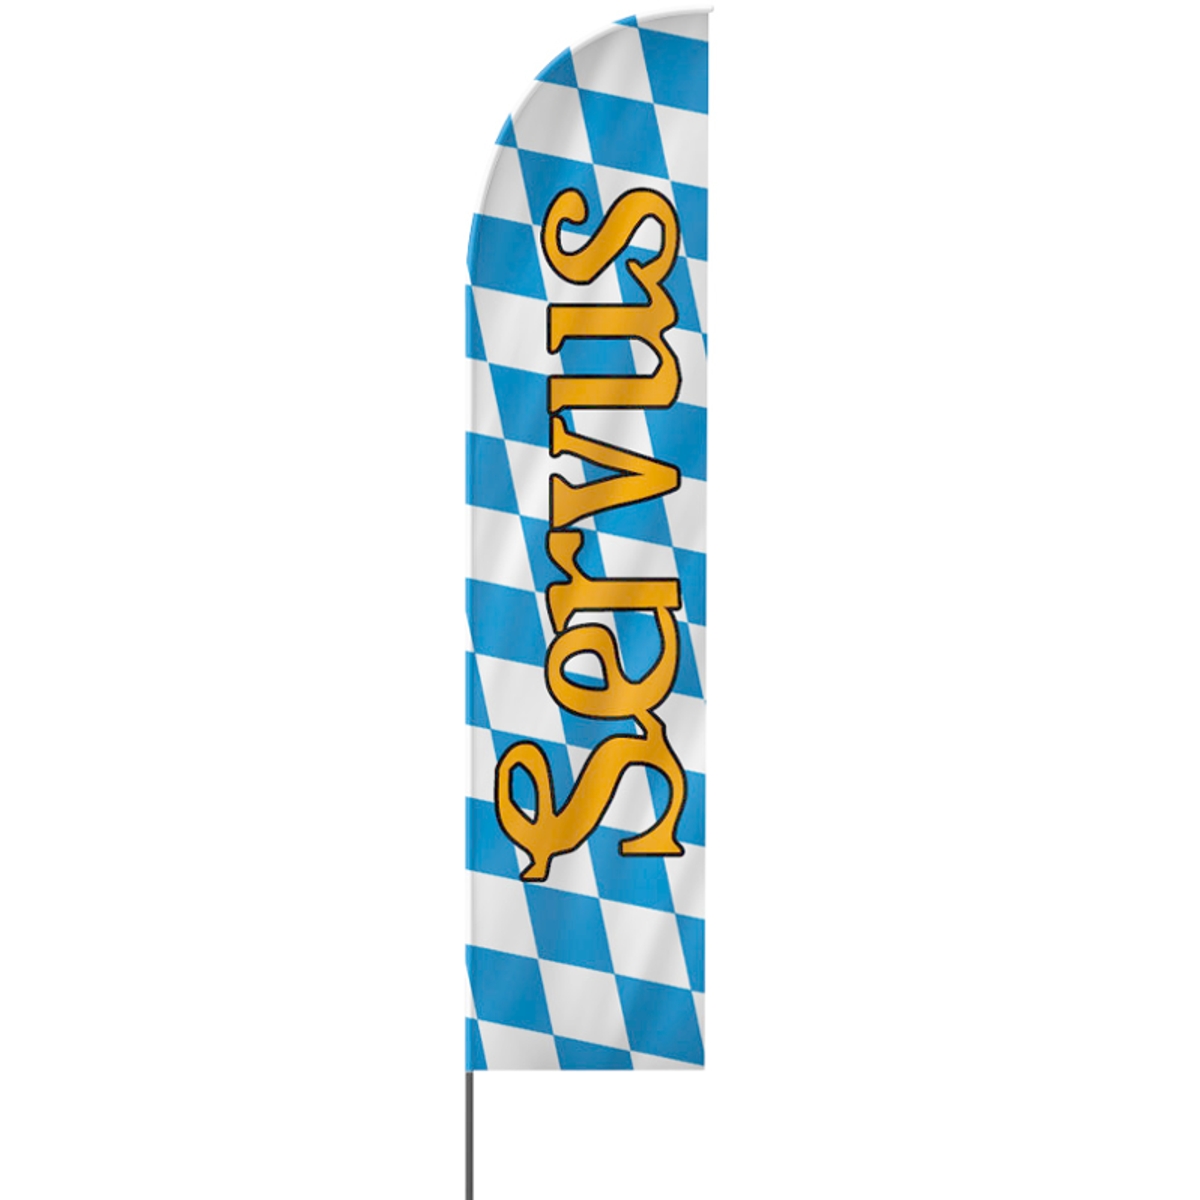 Straight | Servus, Oktoberfest Beachflag, blau weiß, verschiedene Größen, V1